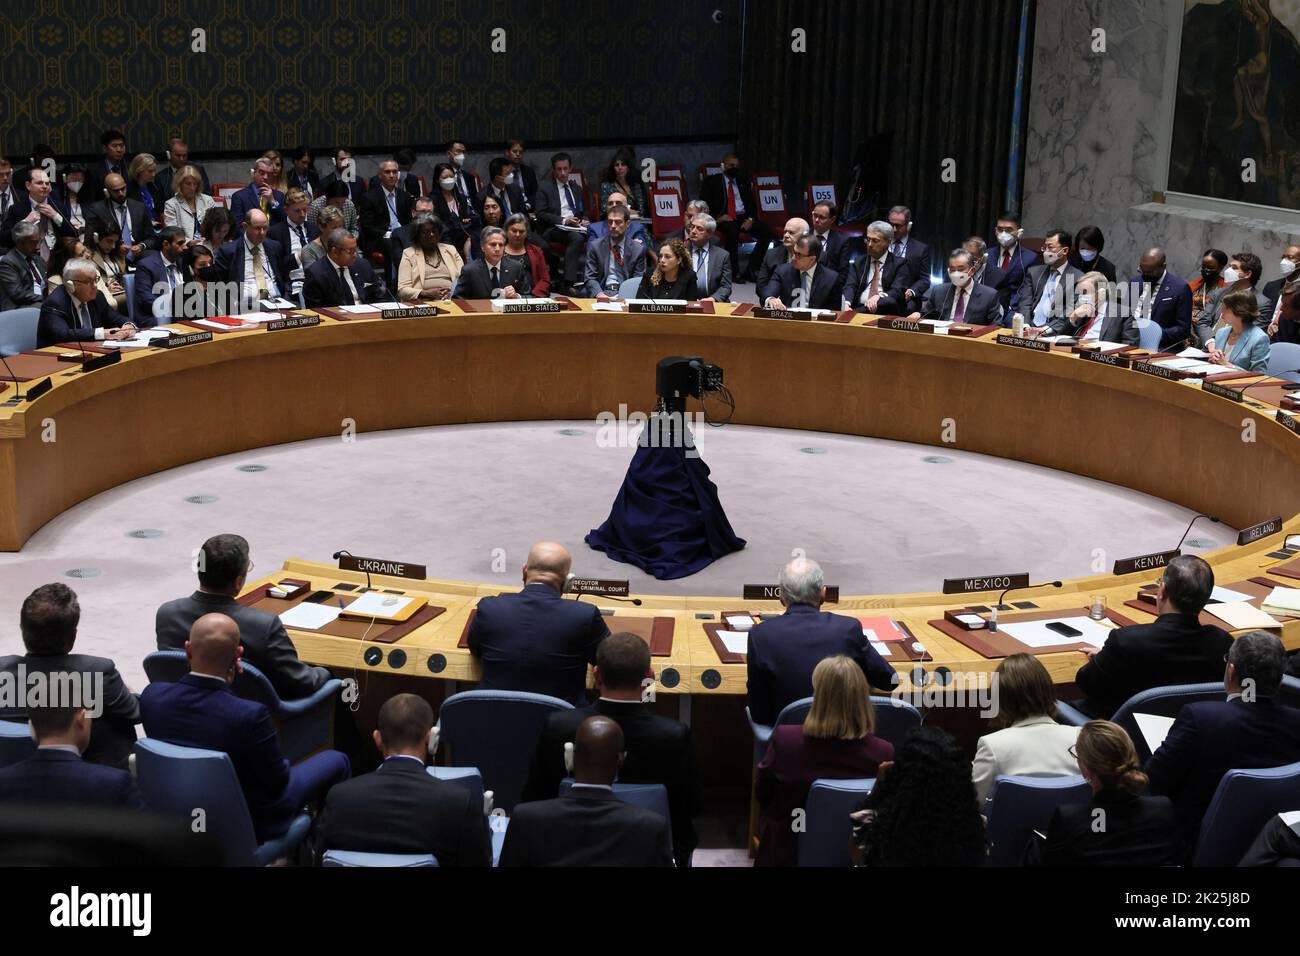 Un point de vue général lors d'une réunion de haut niveau du Conseil de sécurité des Nations Unies sur la situation dans le contexte de l'invasion de l'Ukraine par la Russie, lors de la session de 77th de l'Assemblée générale des Nations Unies au Siège de l'ONU à New York, aux États-Unis, au 22 septembre 2022. REUTERS/Brendan McDermid Banque D'Images